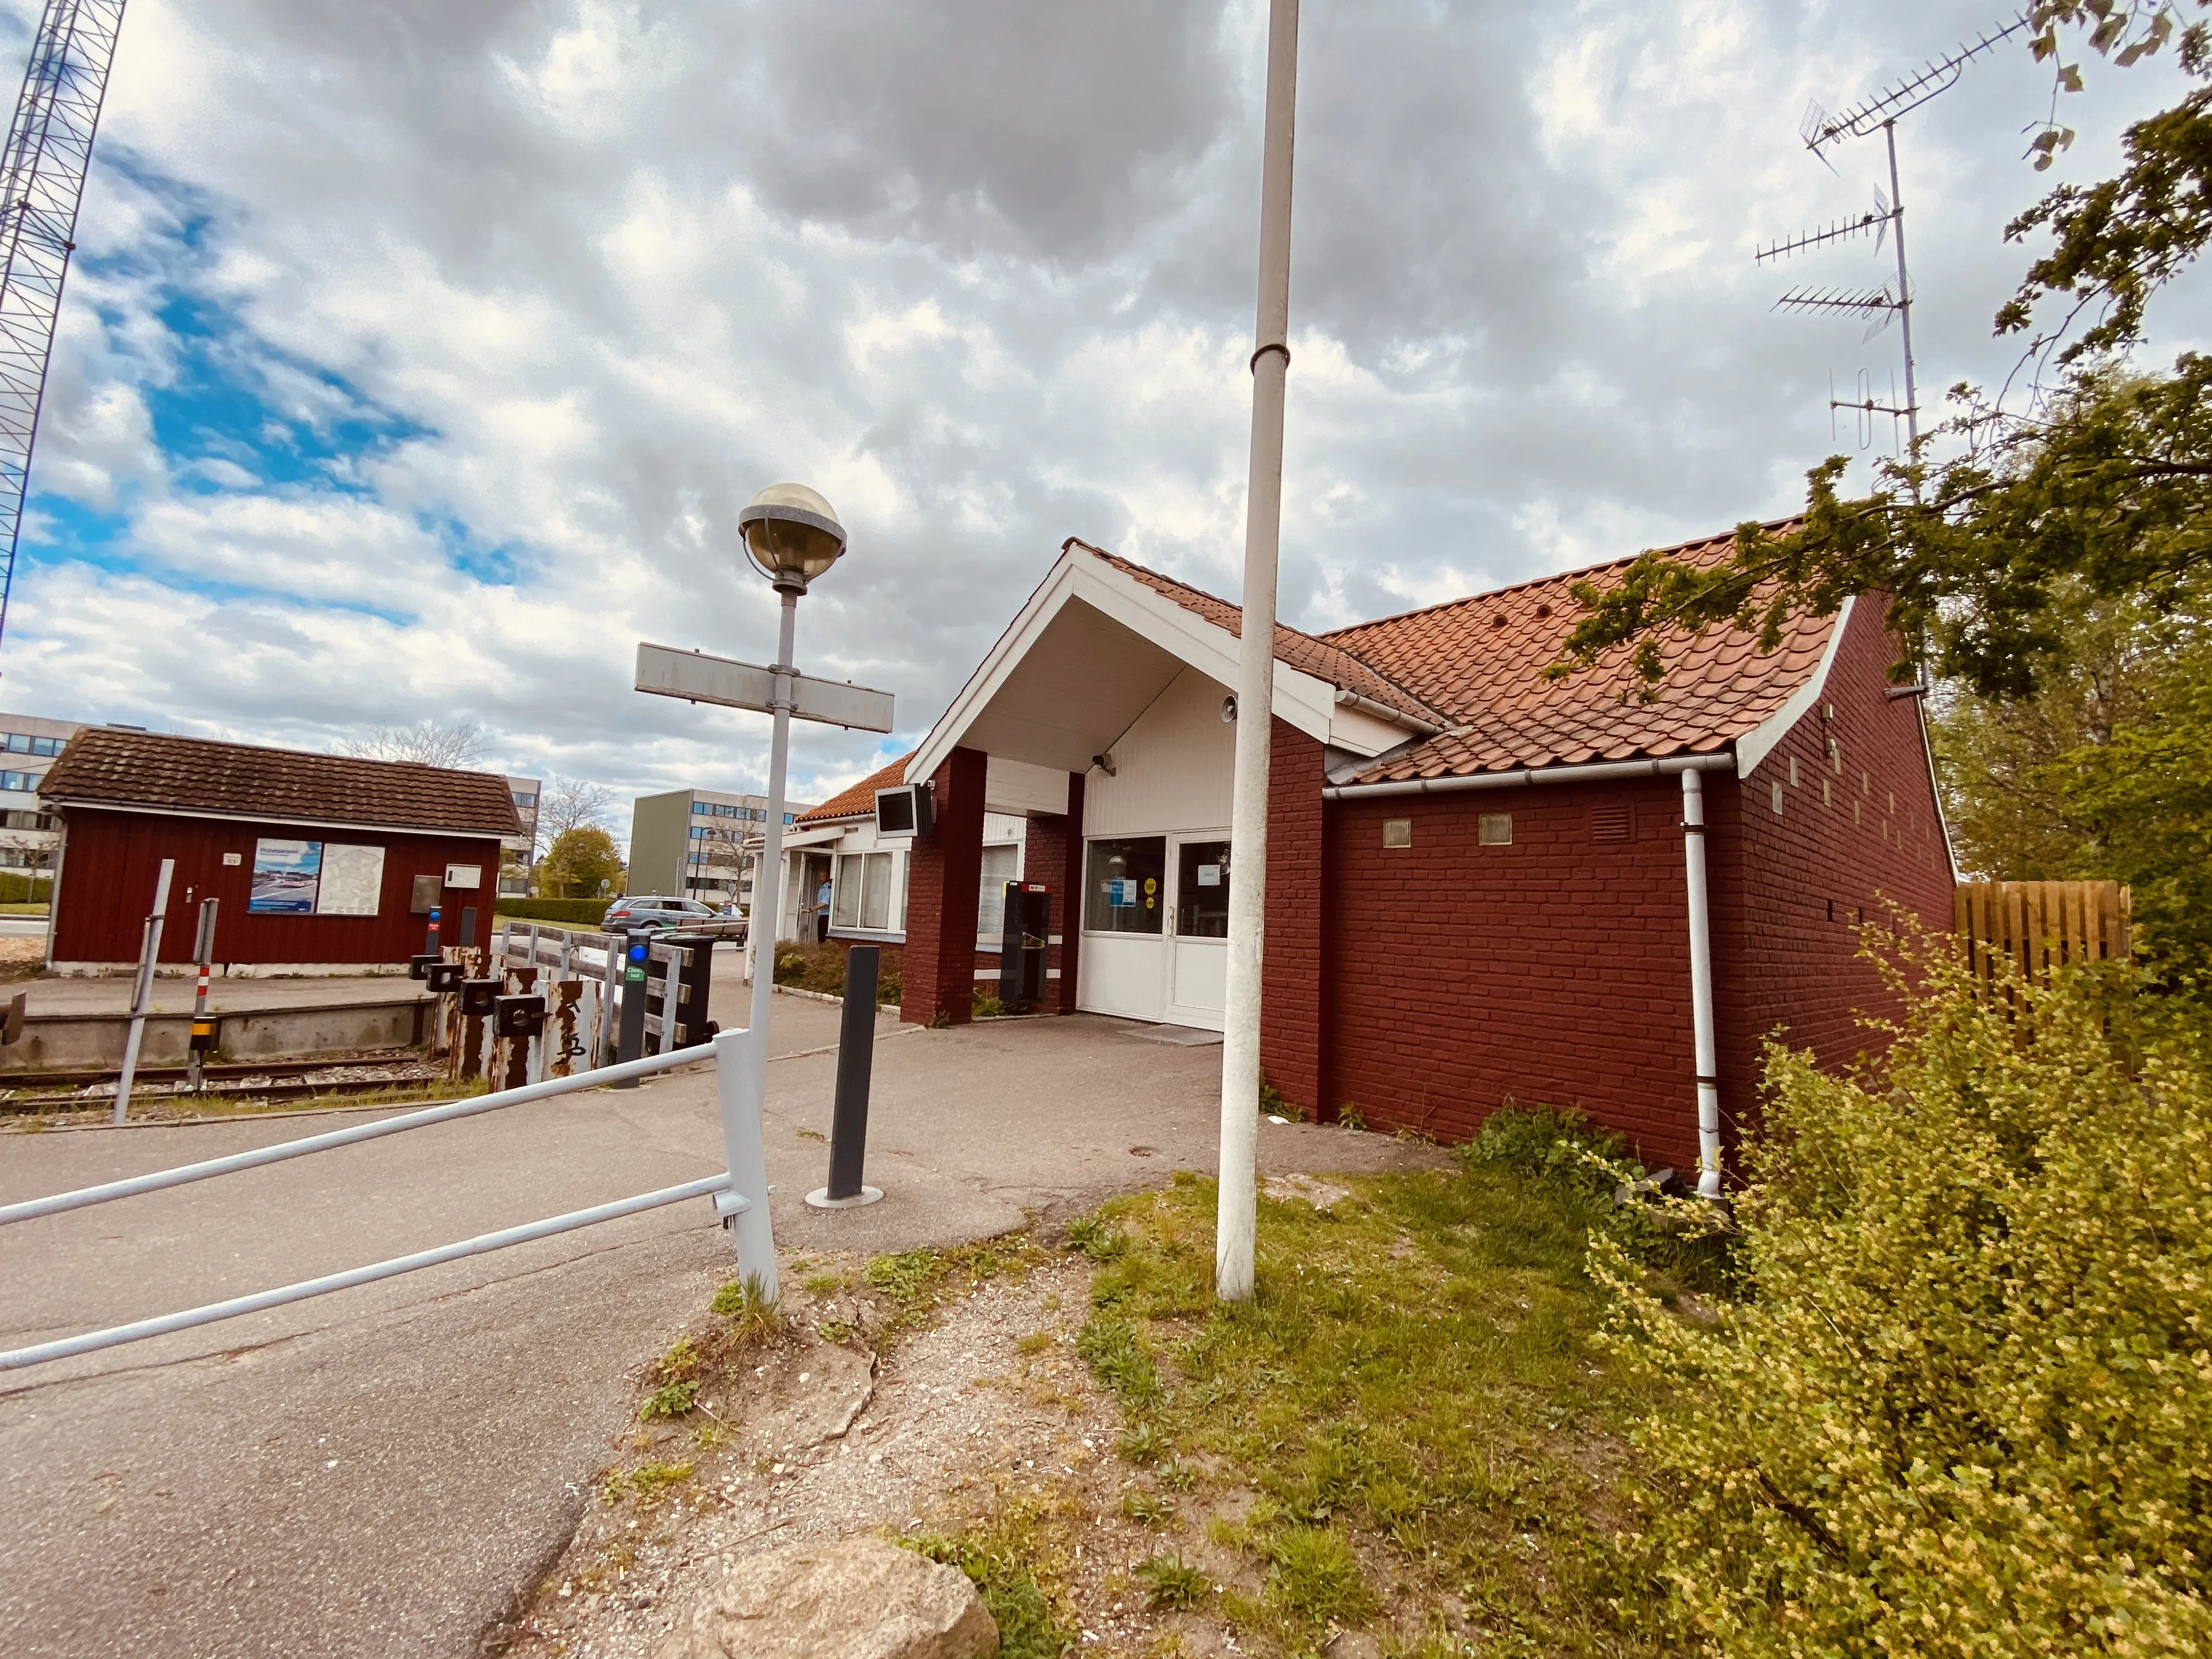 Billede af Nærum Station.